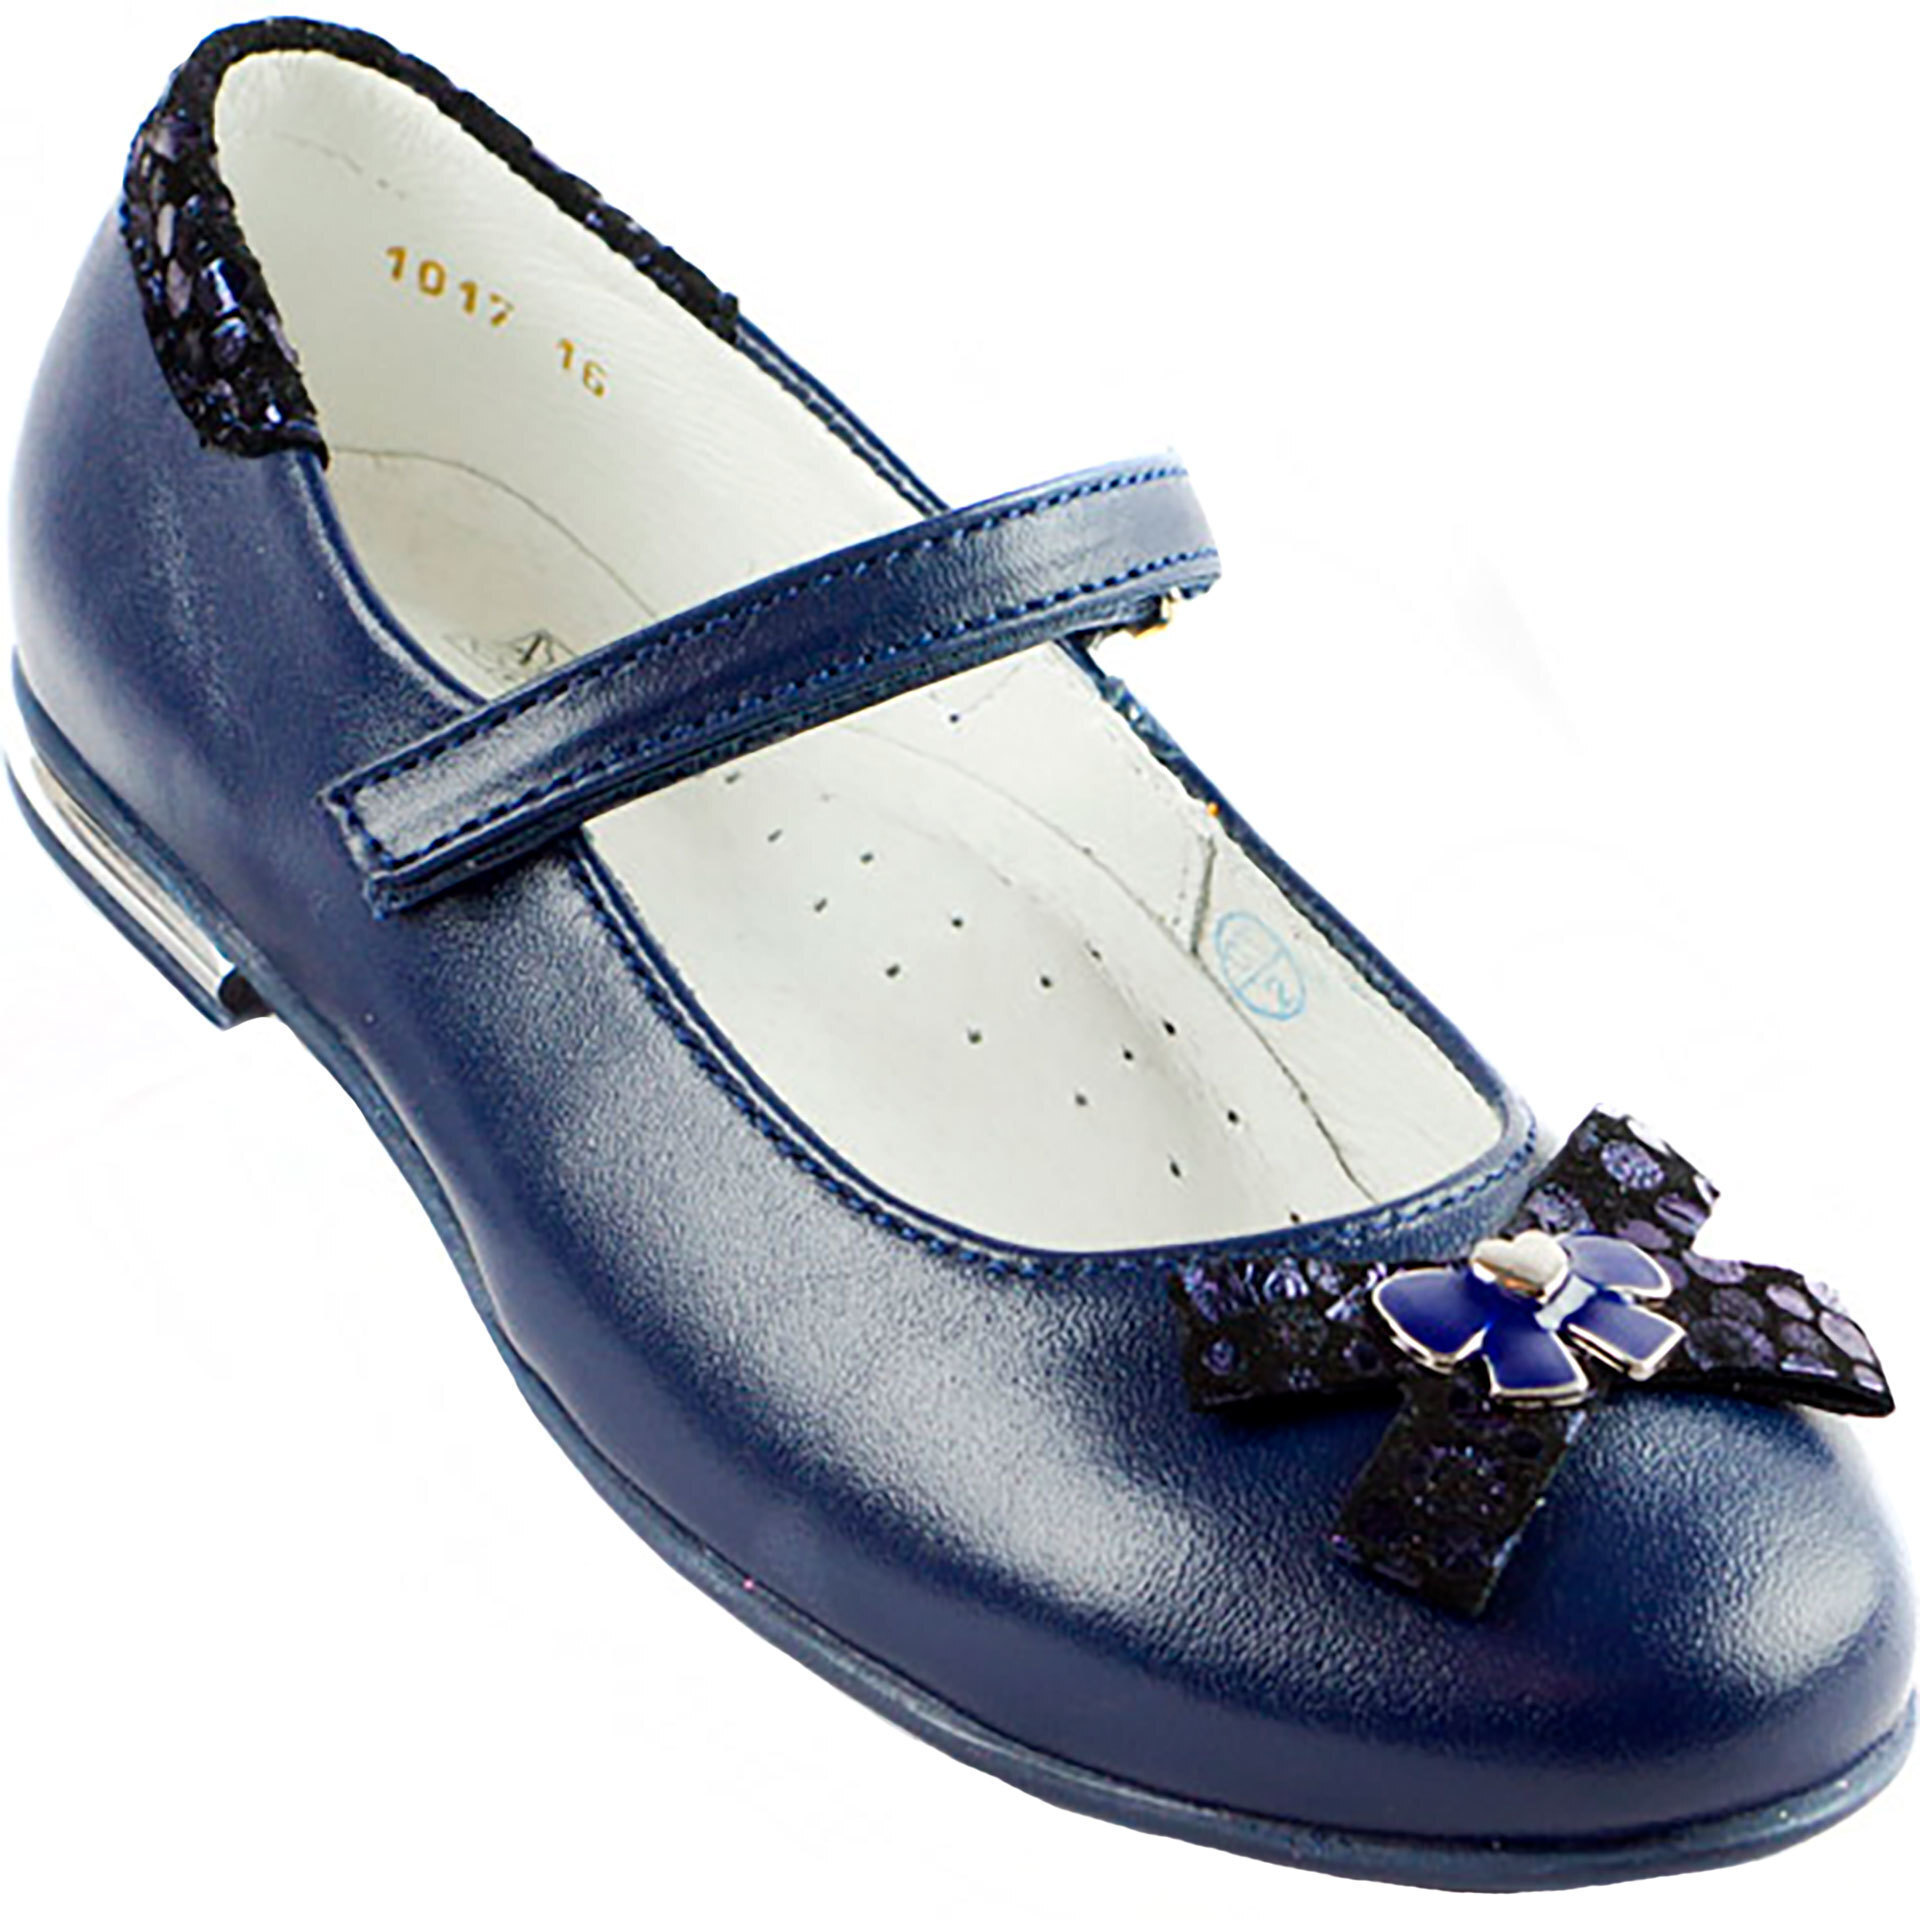 Туфли детские (1346) материал Натуральная кожа, цвет Синий  для девочки 27-31 размеры – Sole Kids